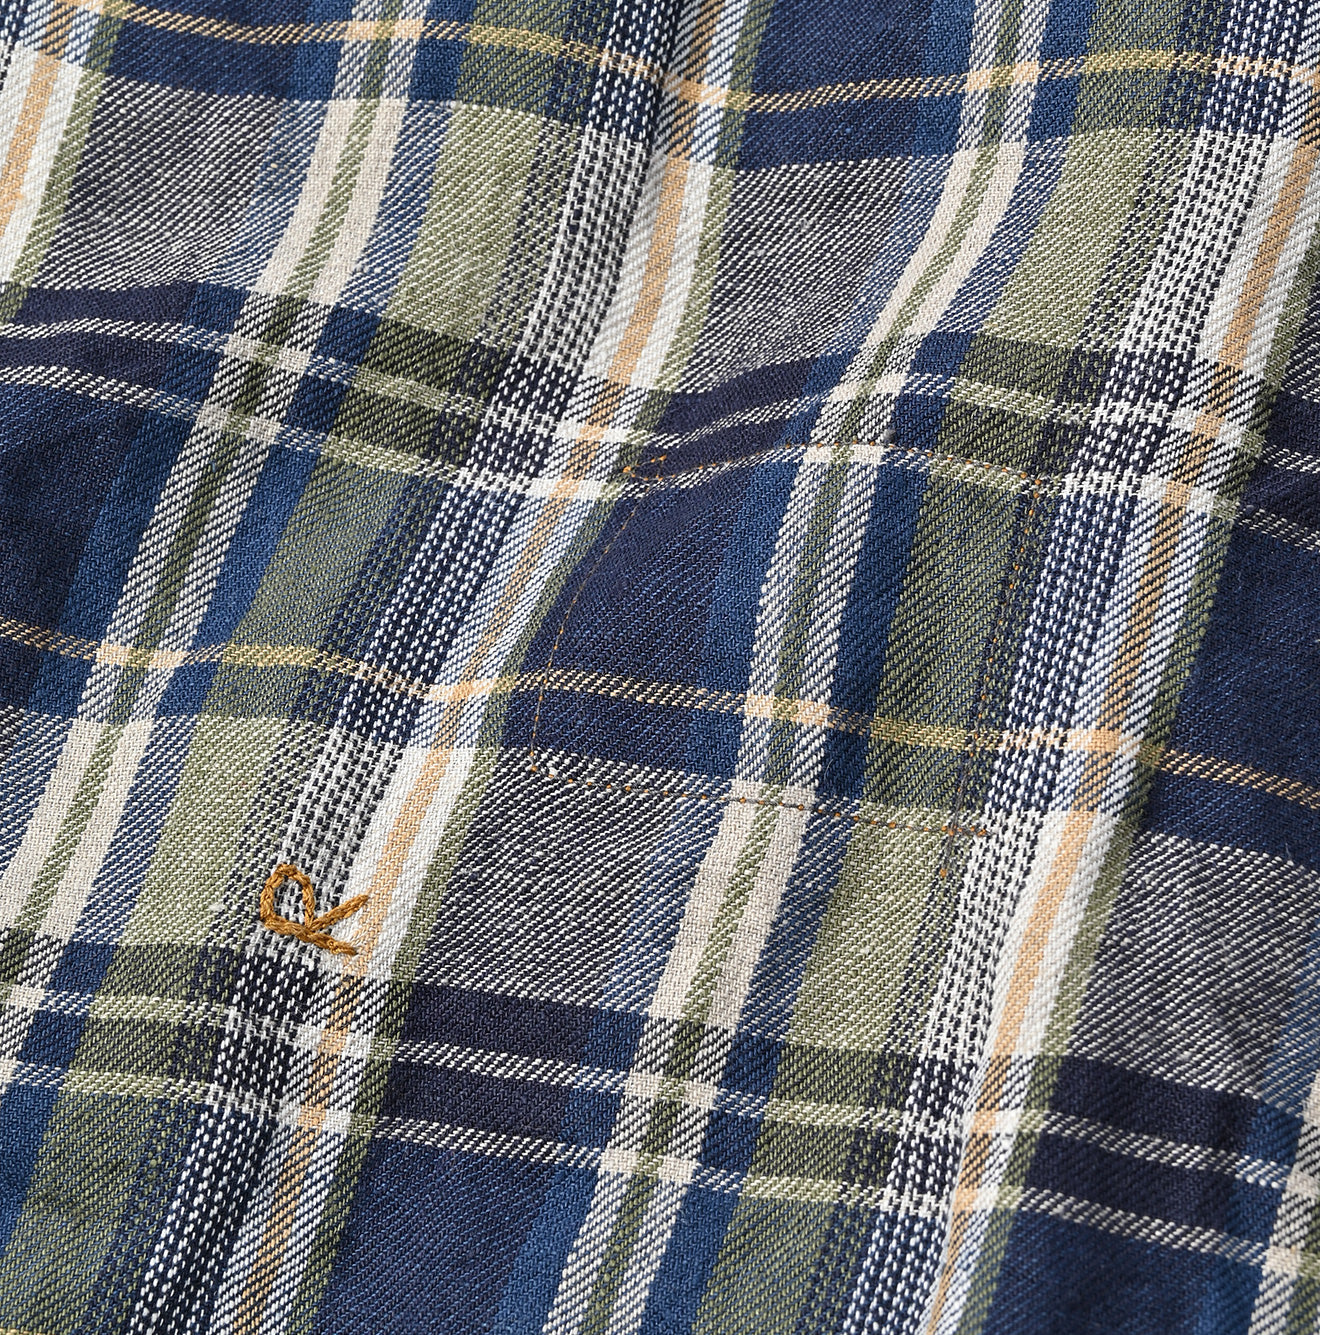 45R Linen Twill 908 8knot Shirt